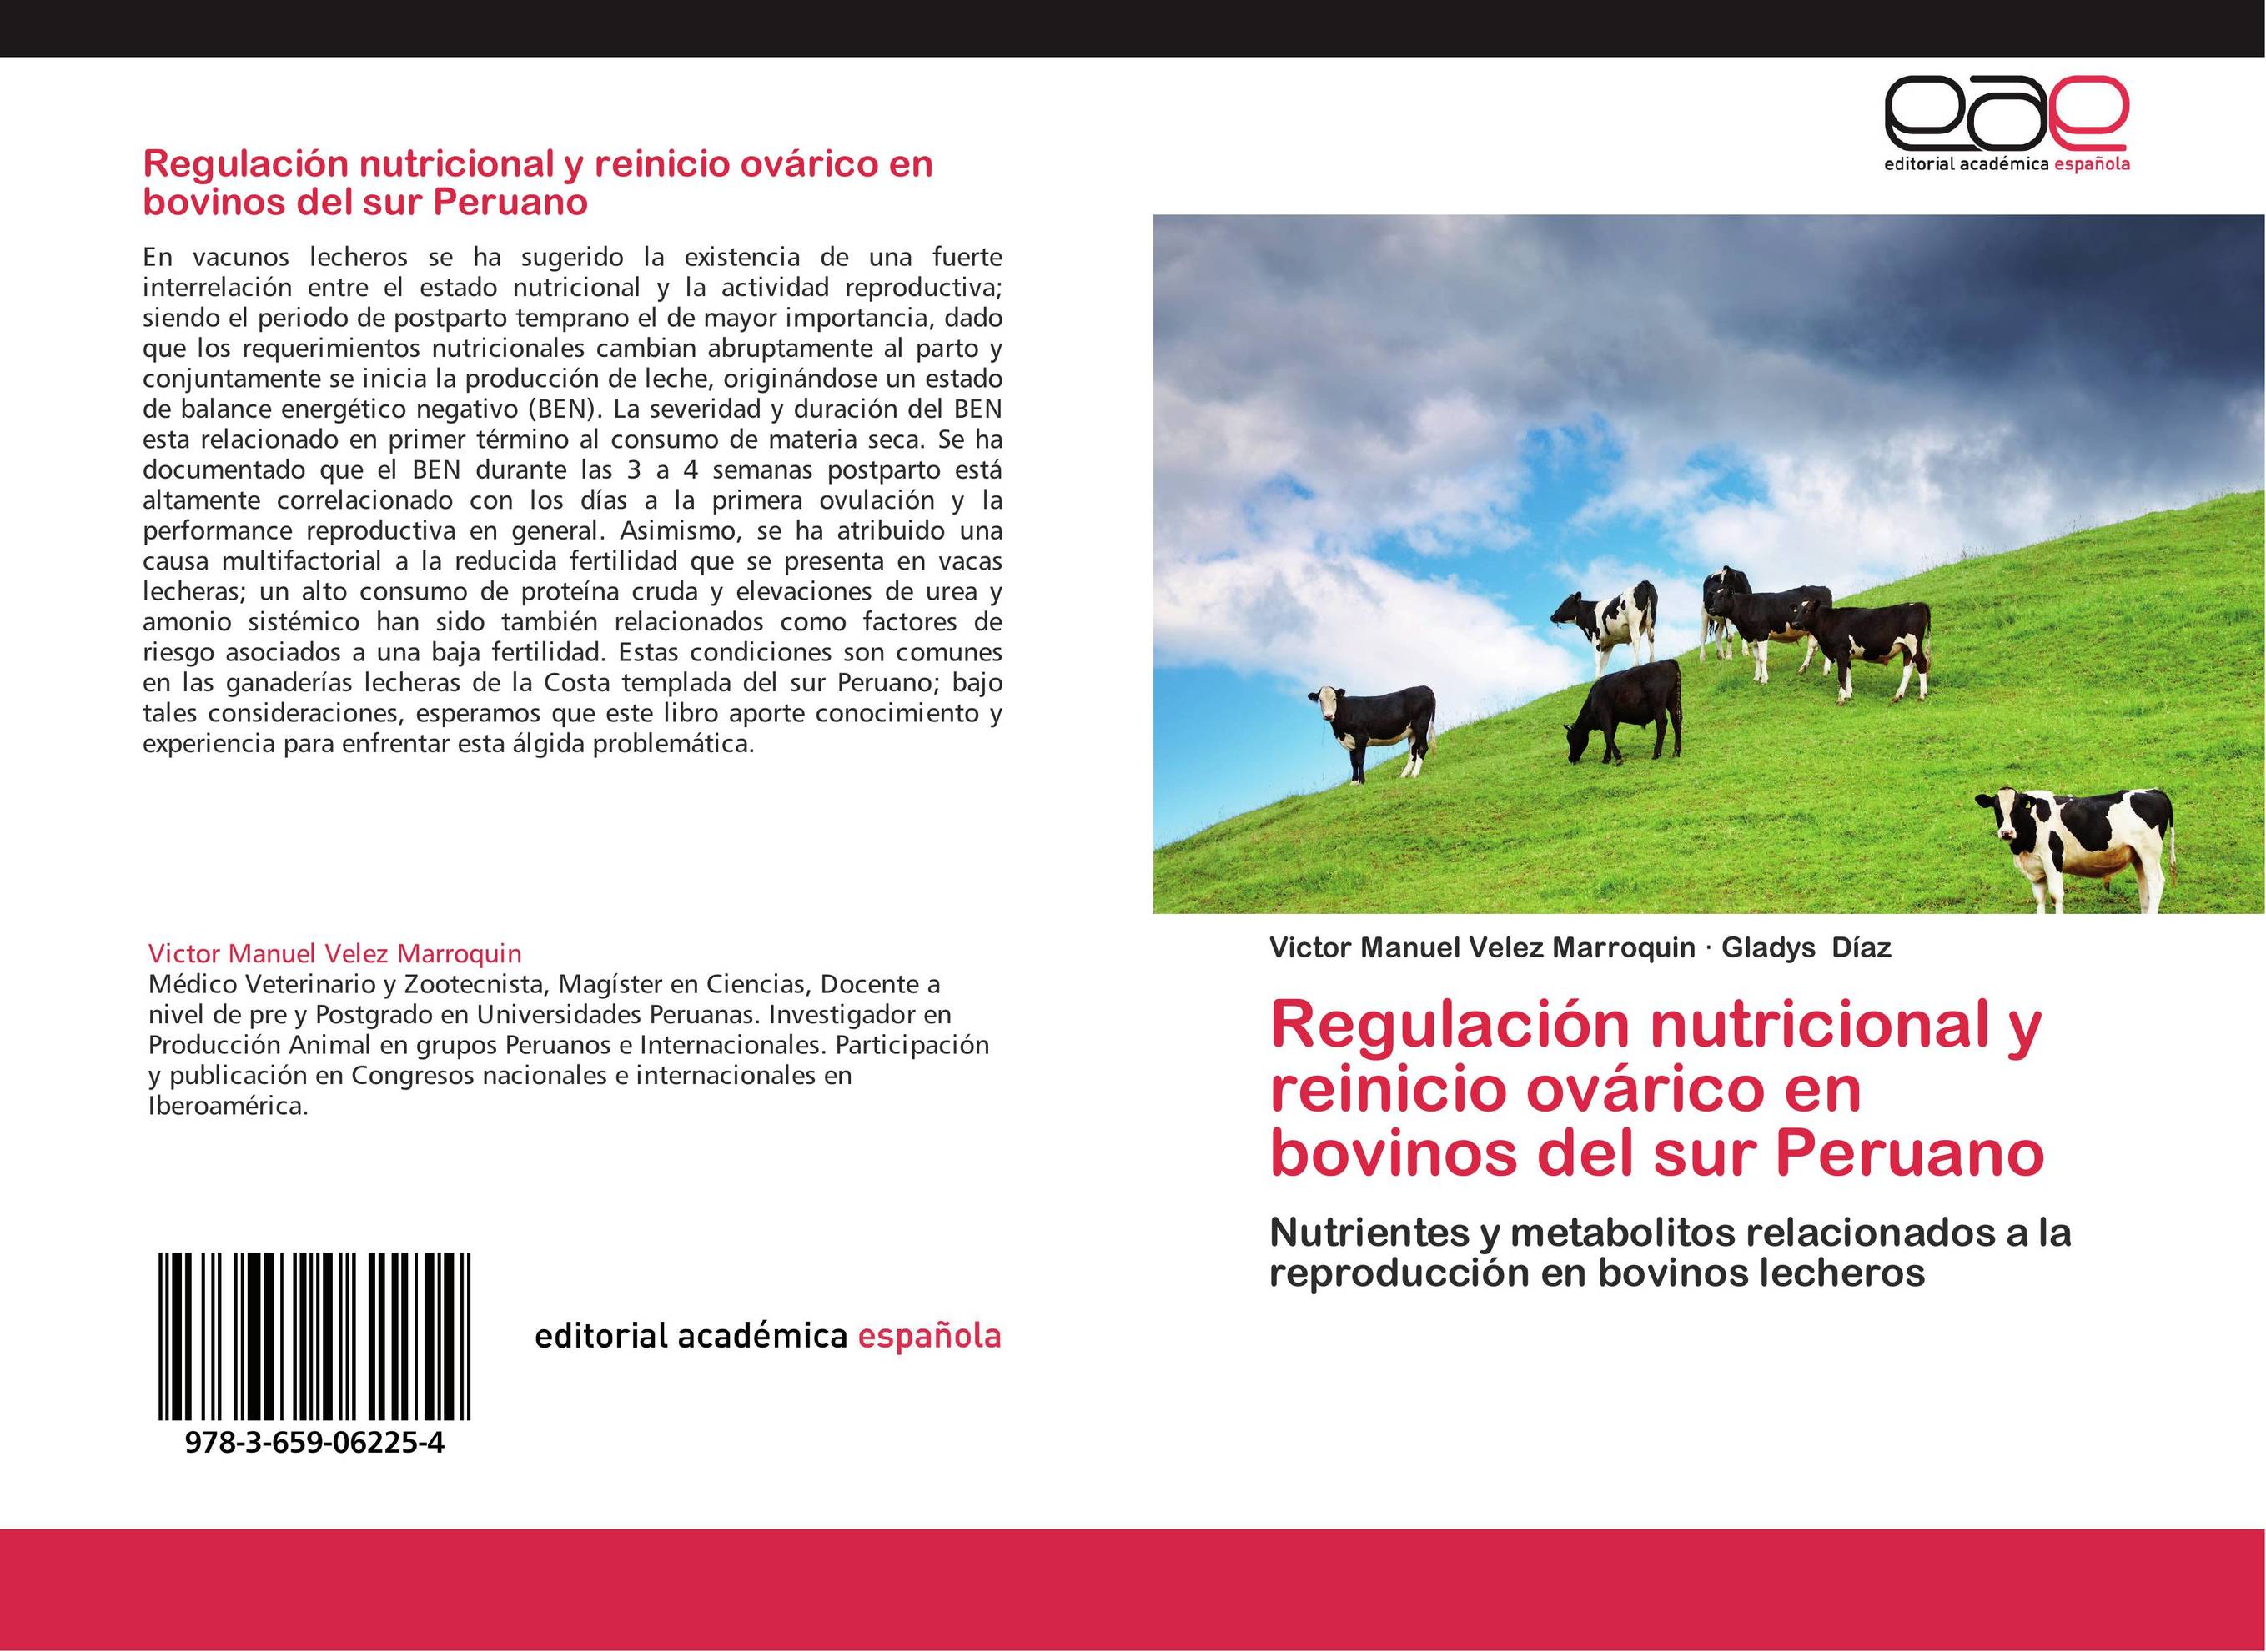 Regulación nutricional y reinicio ovárico en bovinos del sur Peruano